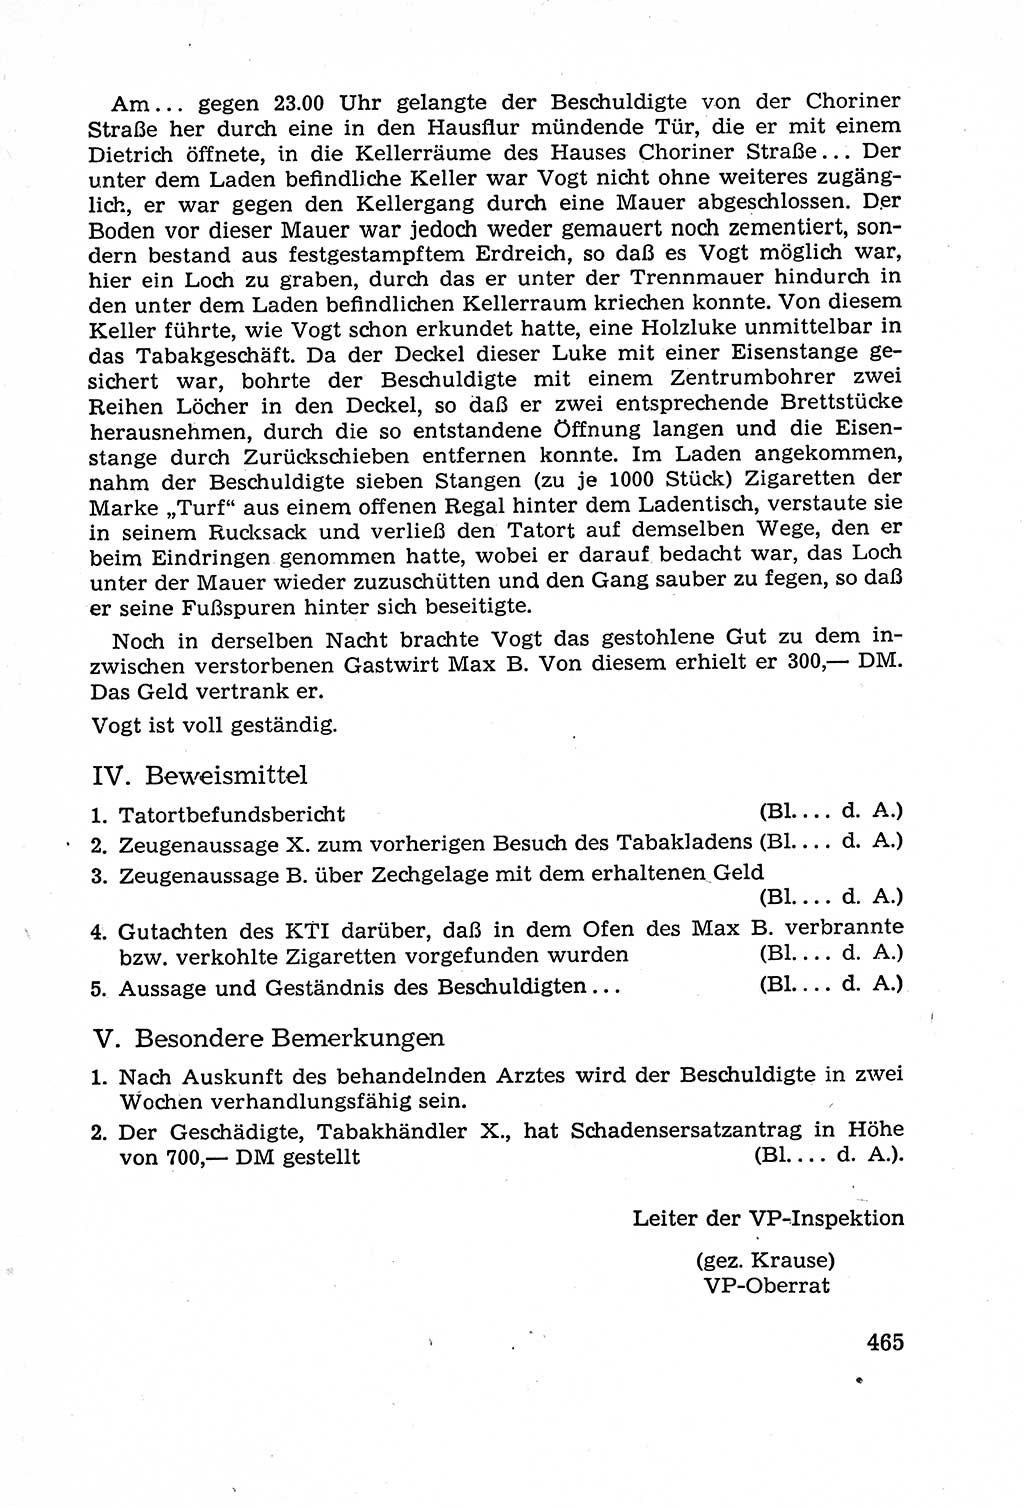 Leitfaden des Strafprozeßrechts der Deutschen Demokratischen Republik (DDR) 1959, Seite 465 (LF StPR DDR 1959, S. 465)